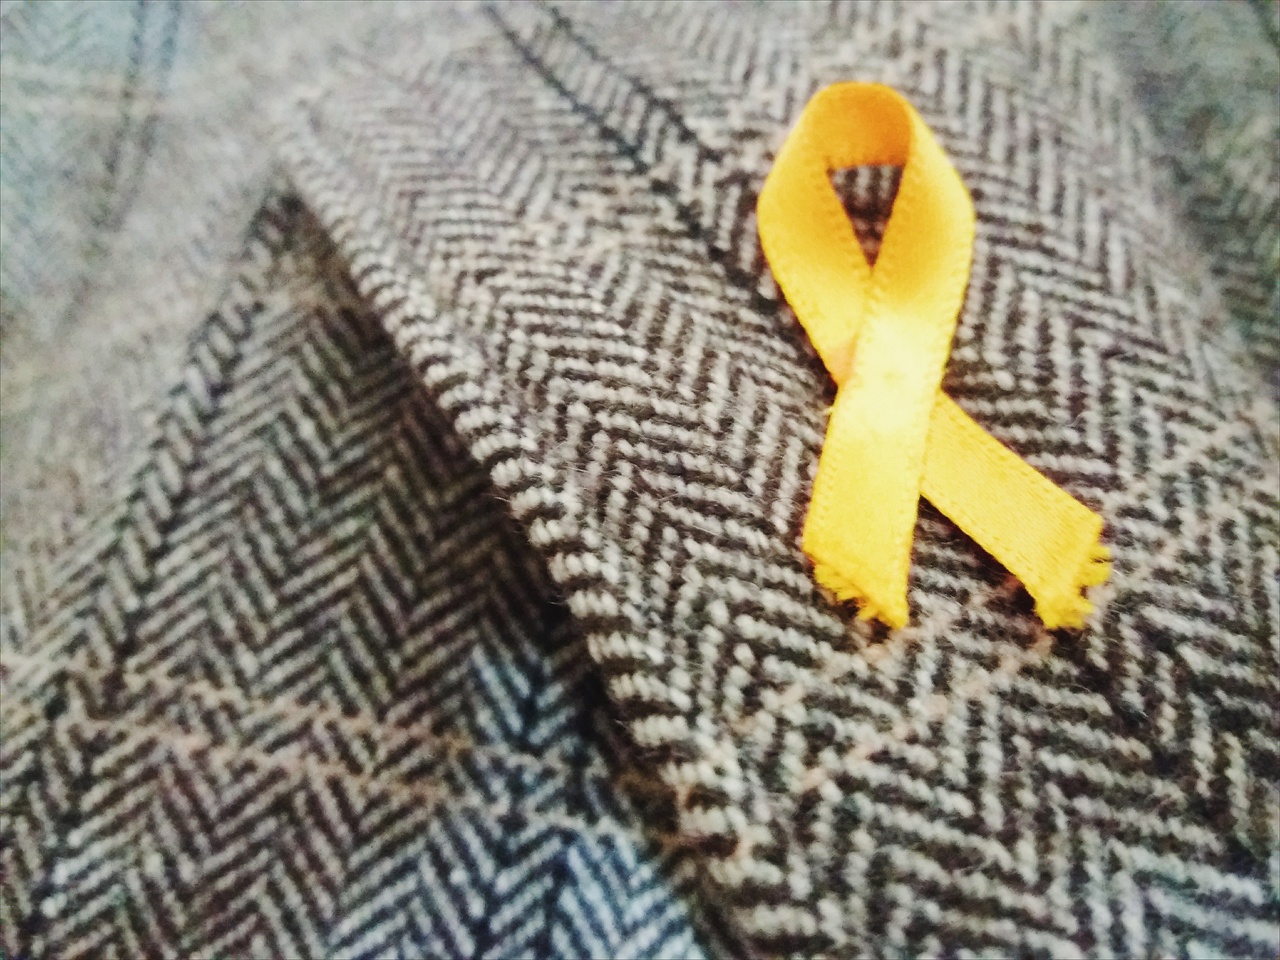 세기 경 유럽에서 유래된 노란 리본 달기 캠페인은 많은 사연을 담고 있다. 2014년부터 대한민국에서도 '세월호 침몰 사건' 희생자들을 기리기 위한 의미로 사용되고 있다. 사진은 모직코트에 달린 노란 리본의 모습.